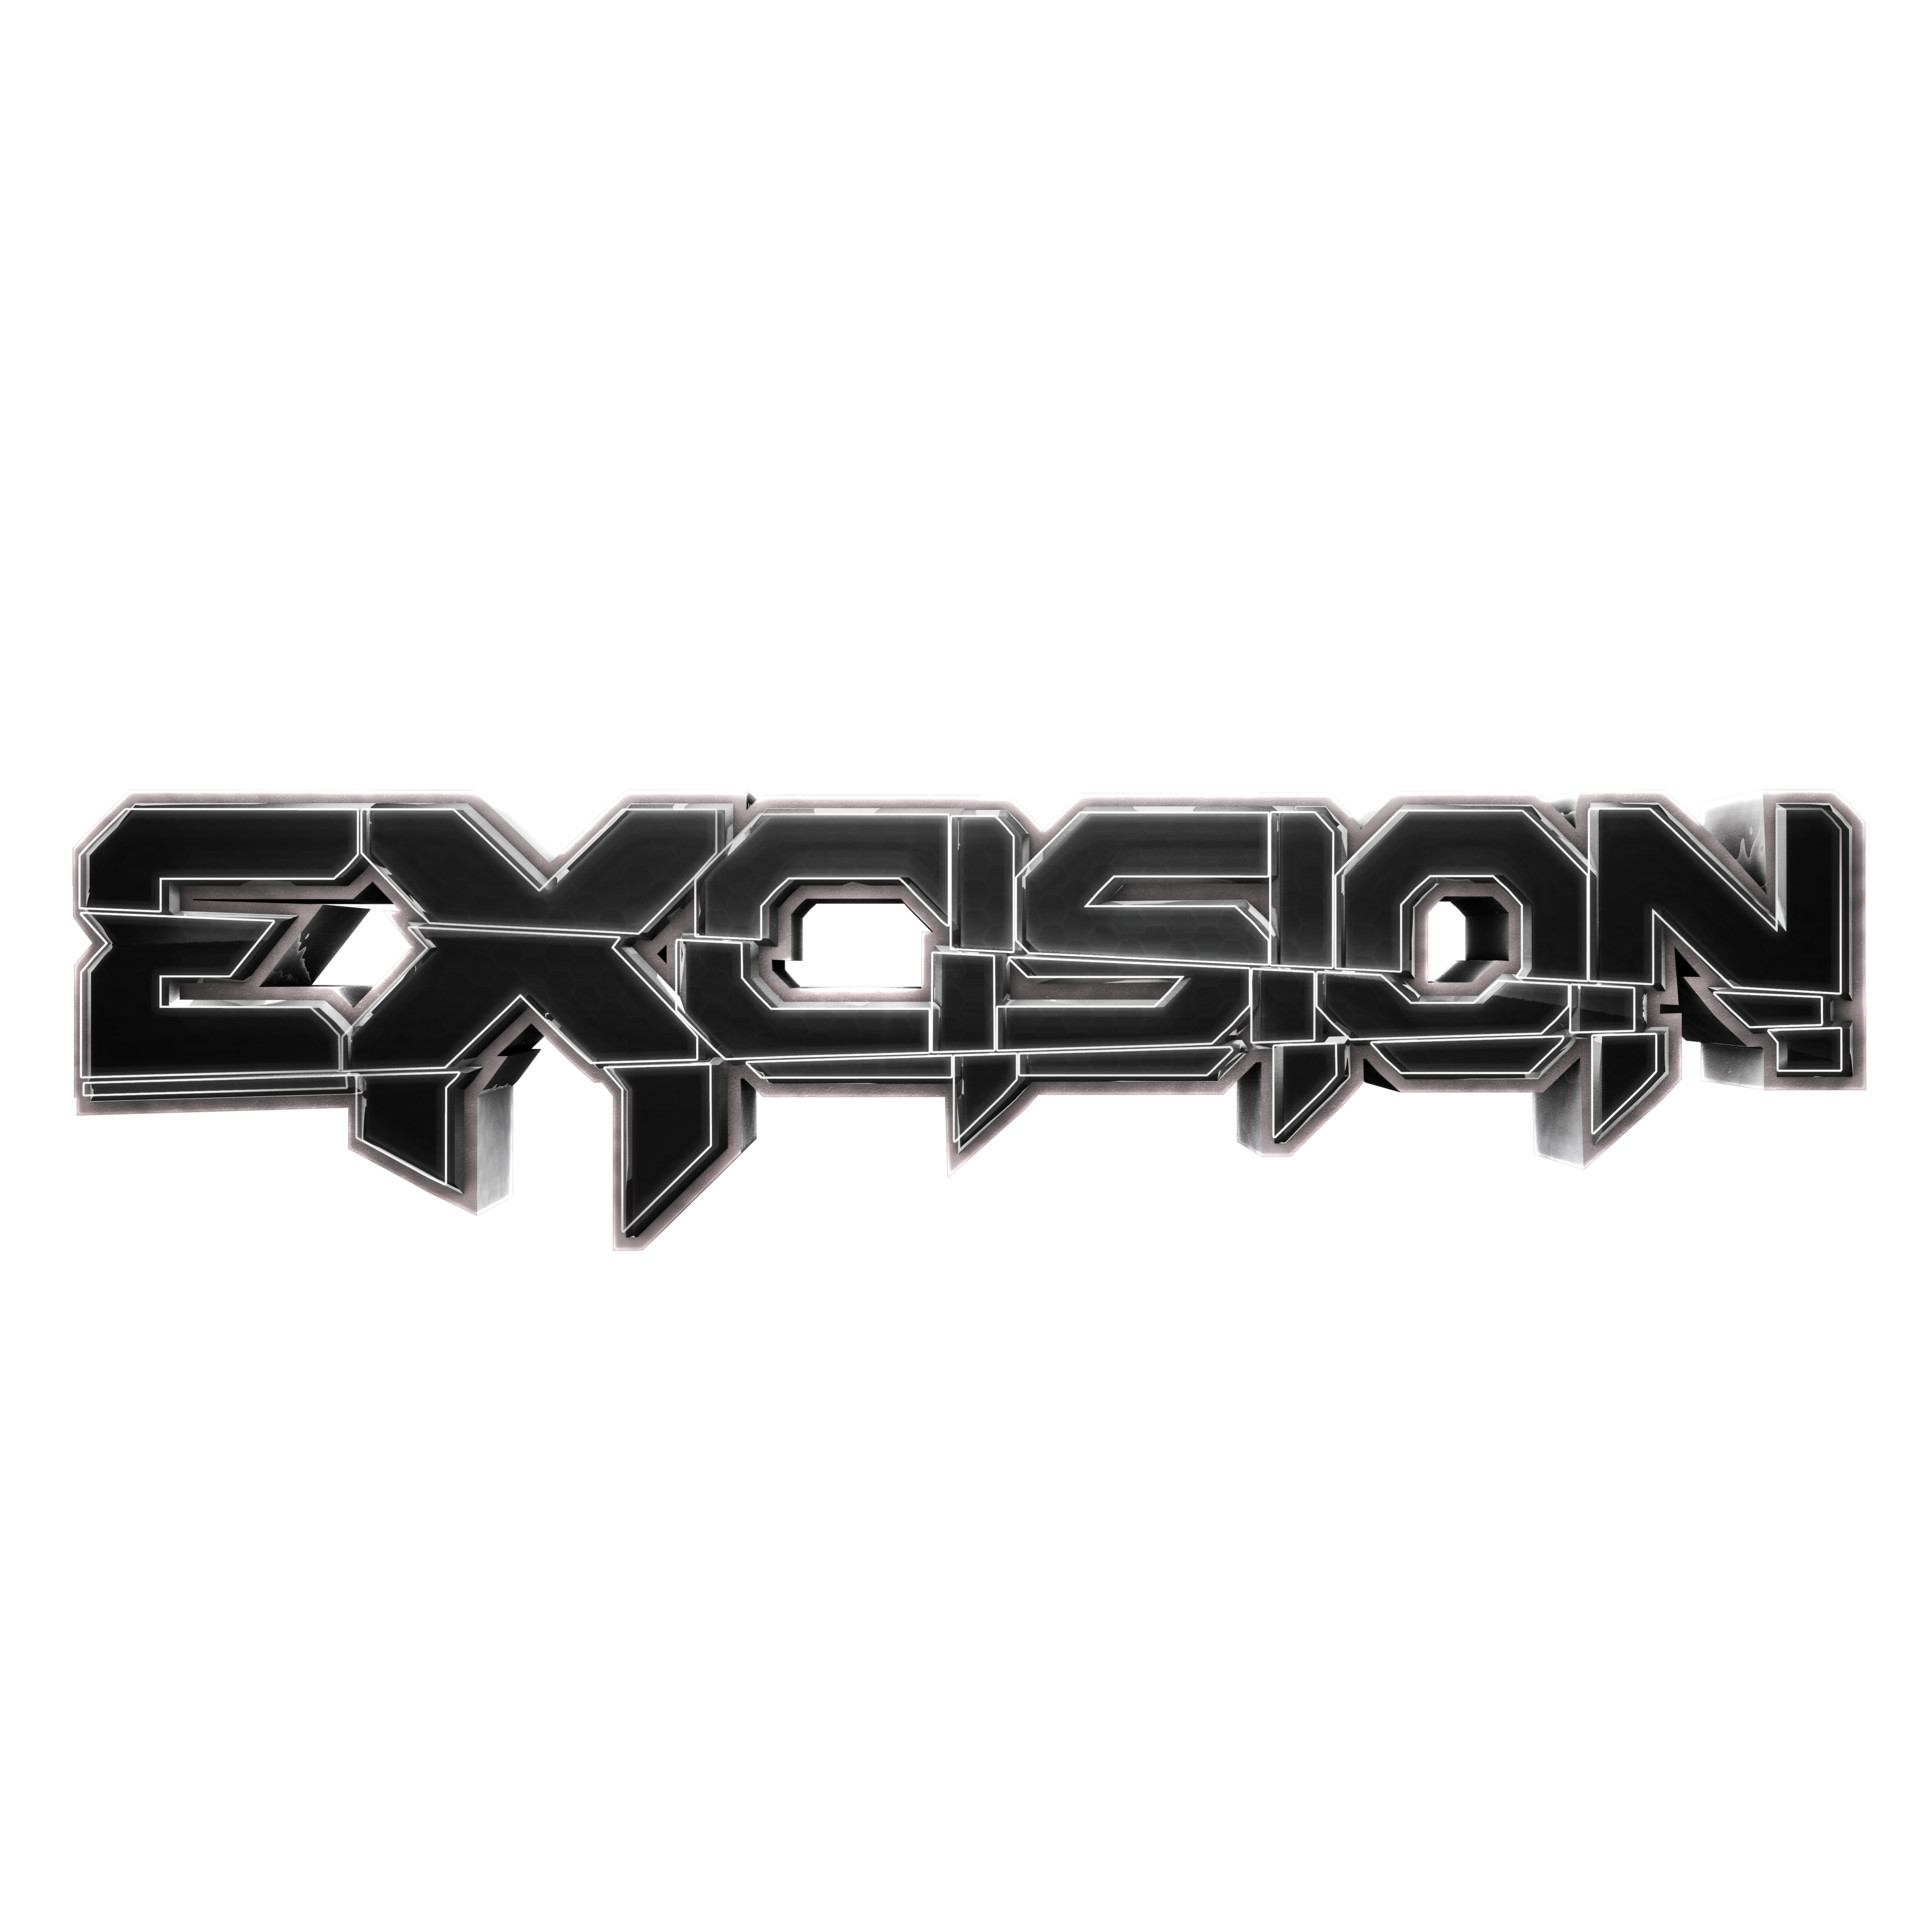 excision album cover